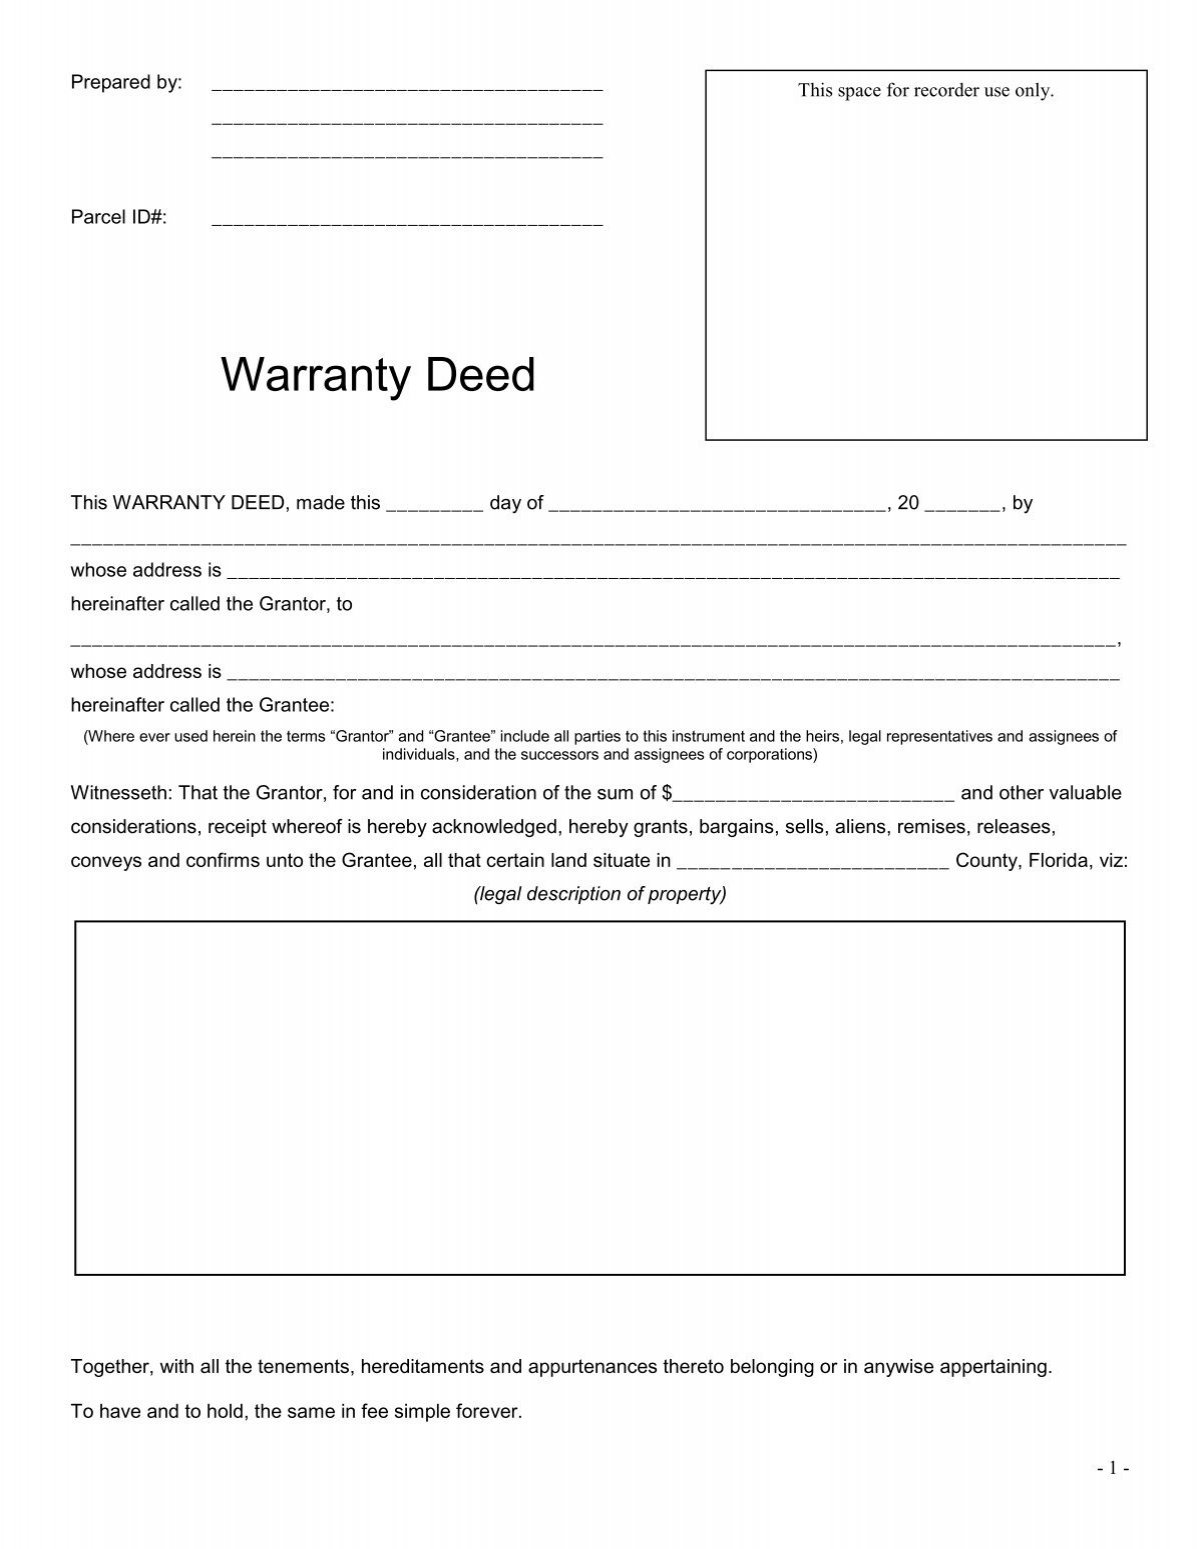 Warranty Deed Walton County Clerk of Court